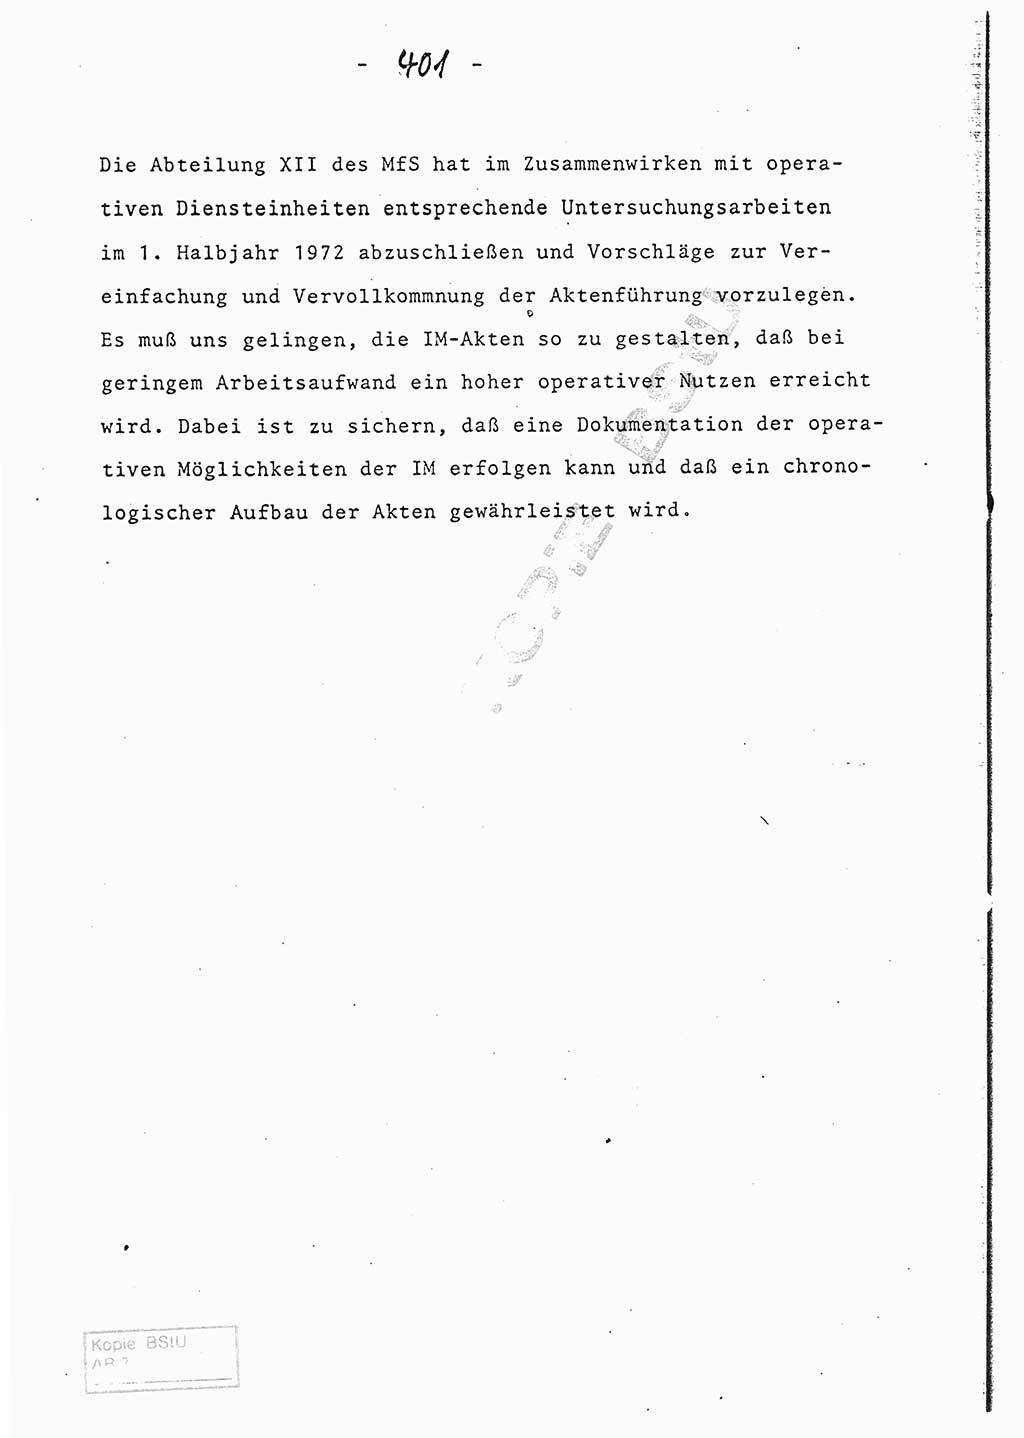 Referat (Entwurf) des Genossen Minister (Generaloberst Erich Mielke) auf der Dienstkonferenz 1972, Ministerium für Staatssicherheit (MfS) [Deutsche Demokratische Republik (DDR)], Der Minister, Geheime Verschlußsache (GVS) 008-150/72, Berlin 25.2.1972, Seite 401 (Ref. Entw. DK MfS DDR Min. GVS 008-150/72 1972, S. 401)